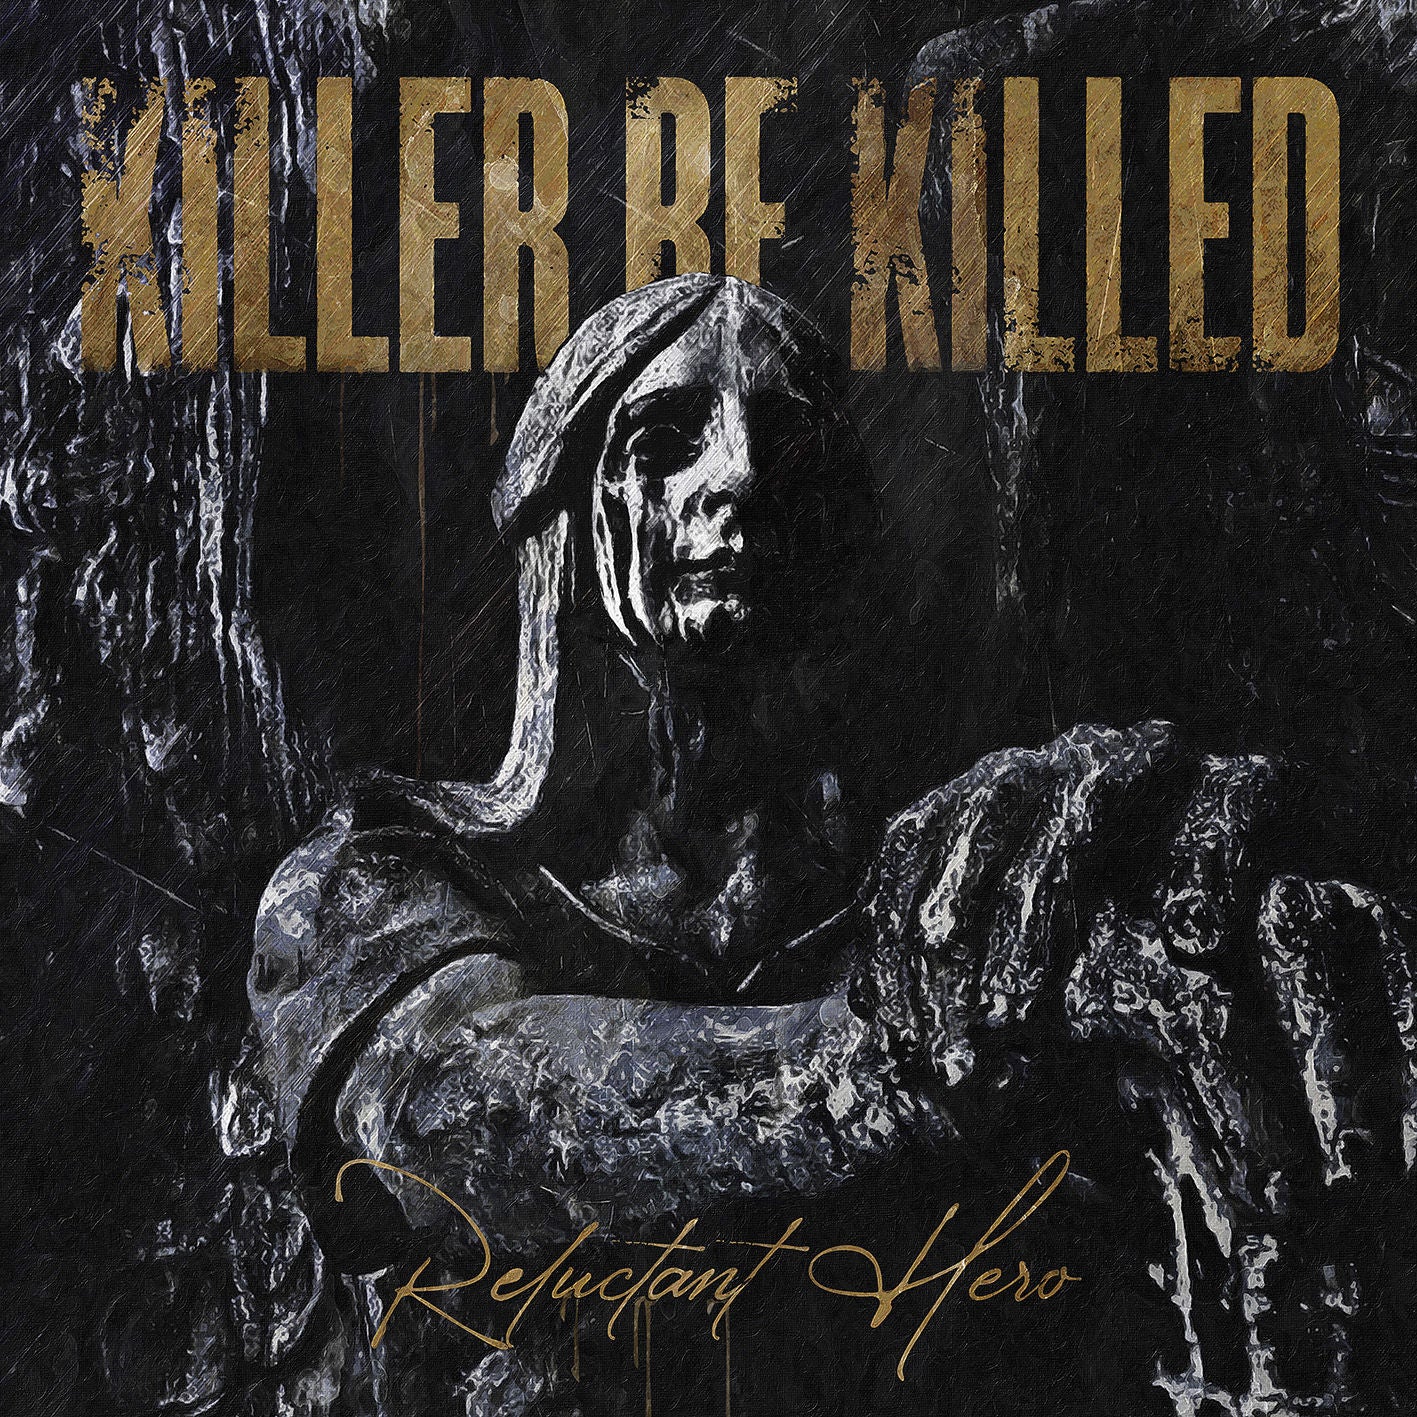 Killer Be Killed - Reluctant Hero: CD 